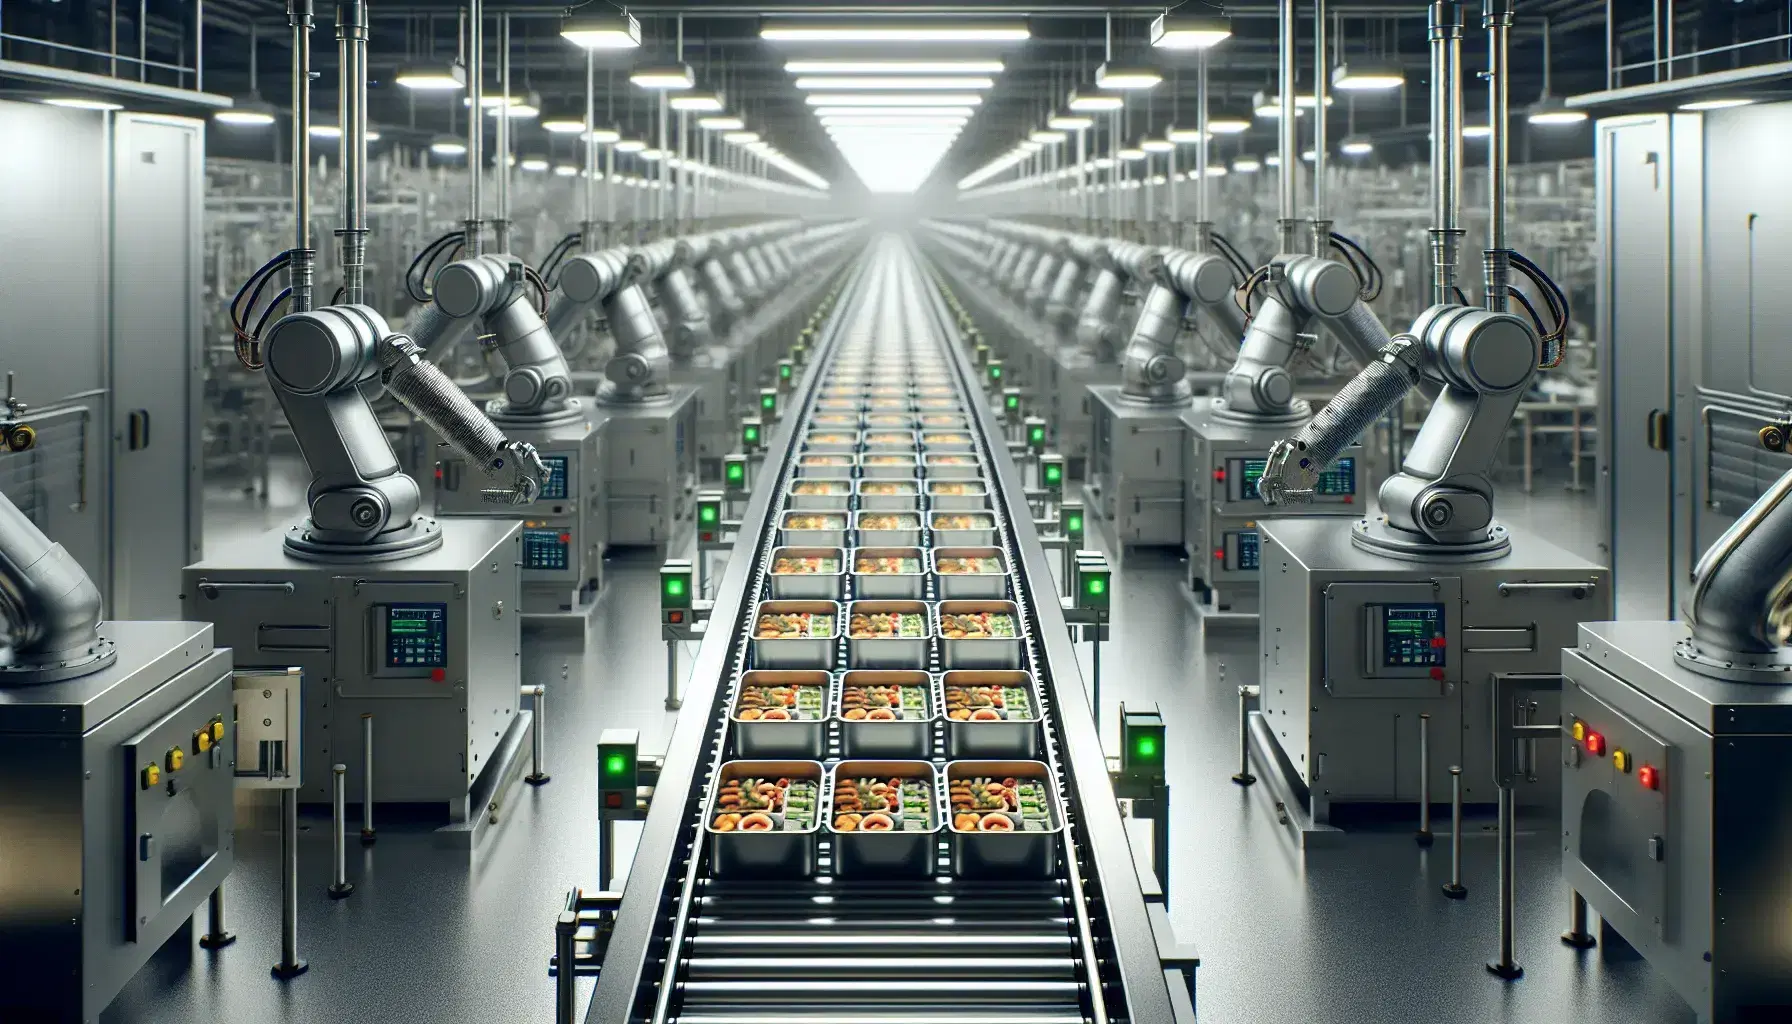 Línea de producción automatizada en fábrica con brazos robóticos manipulando contenedores sellados de alimentos sobre cinta transportadora, rodeados de maquinaria de acero inoxidable.